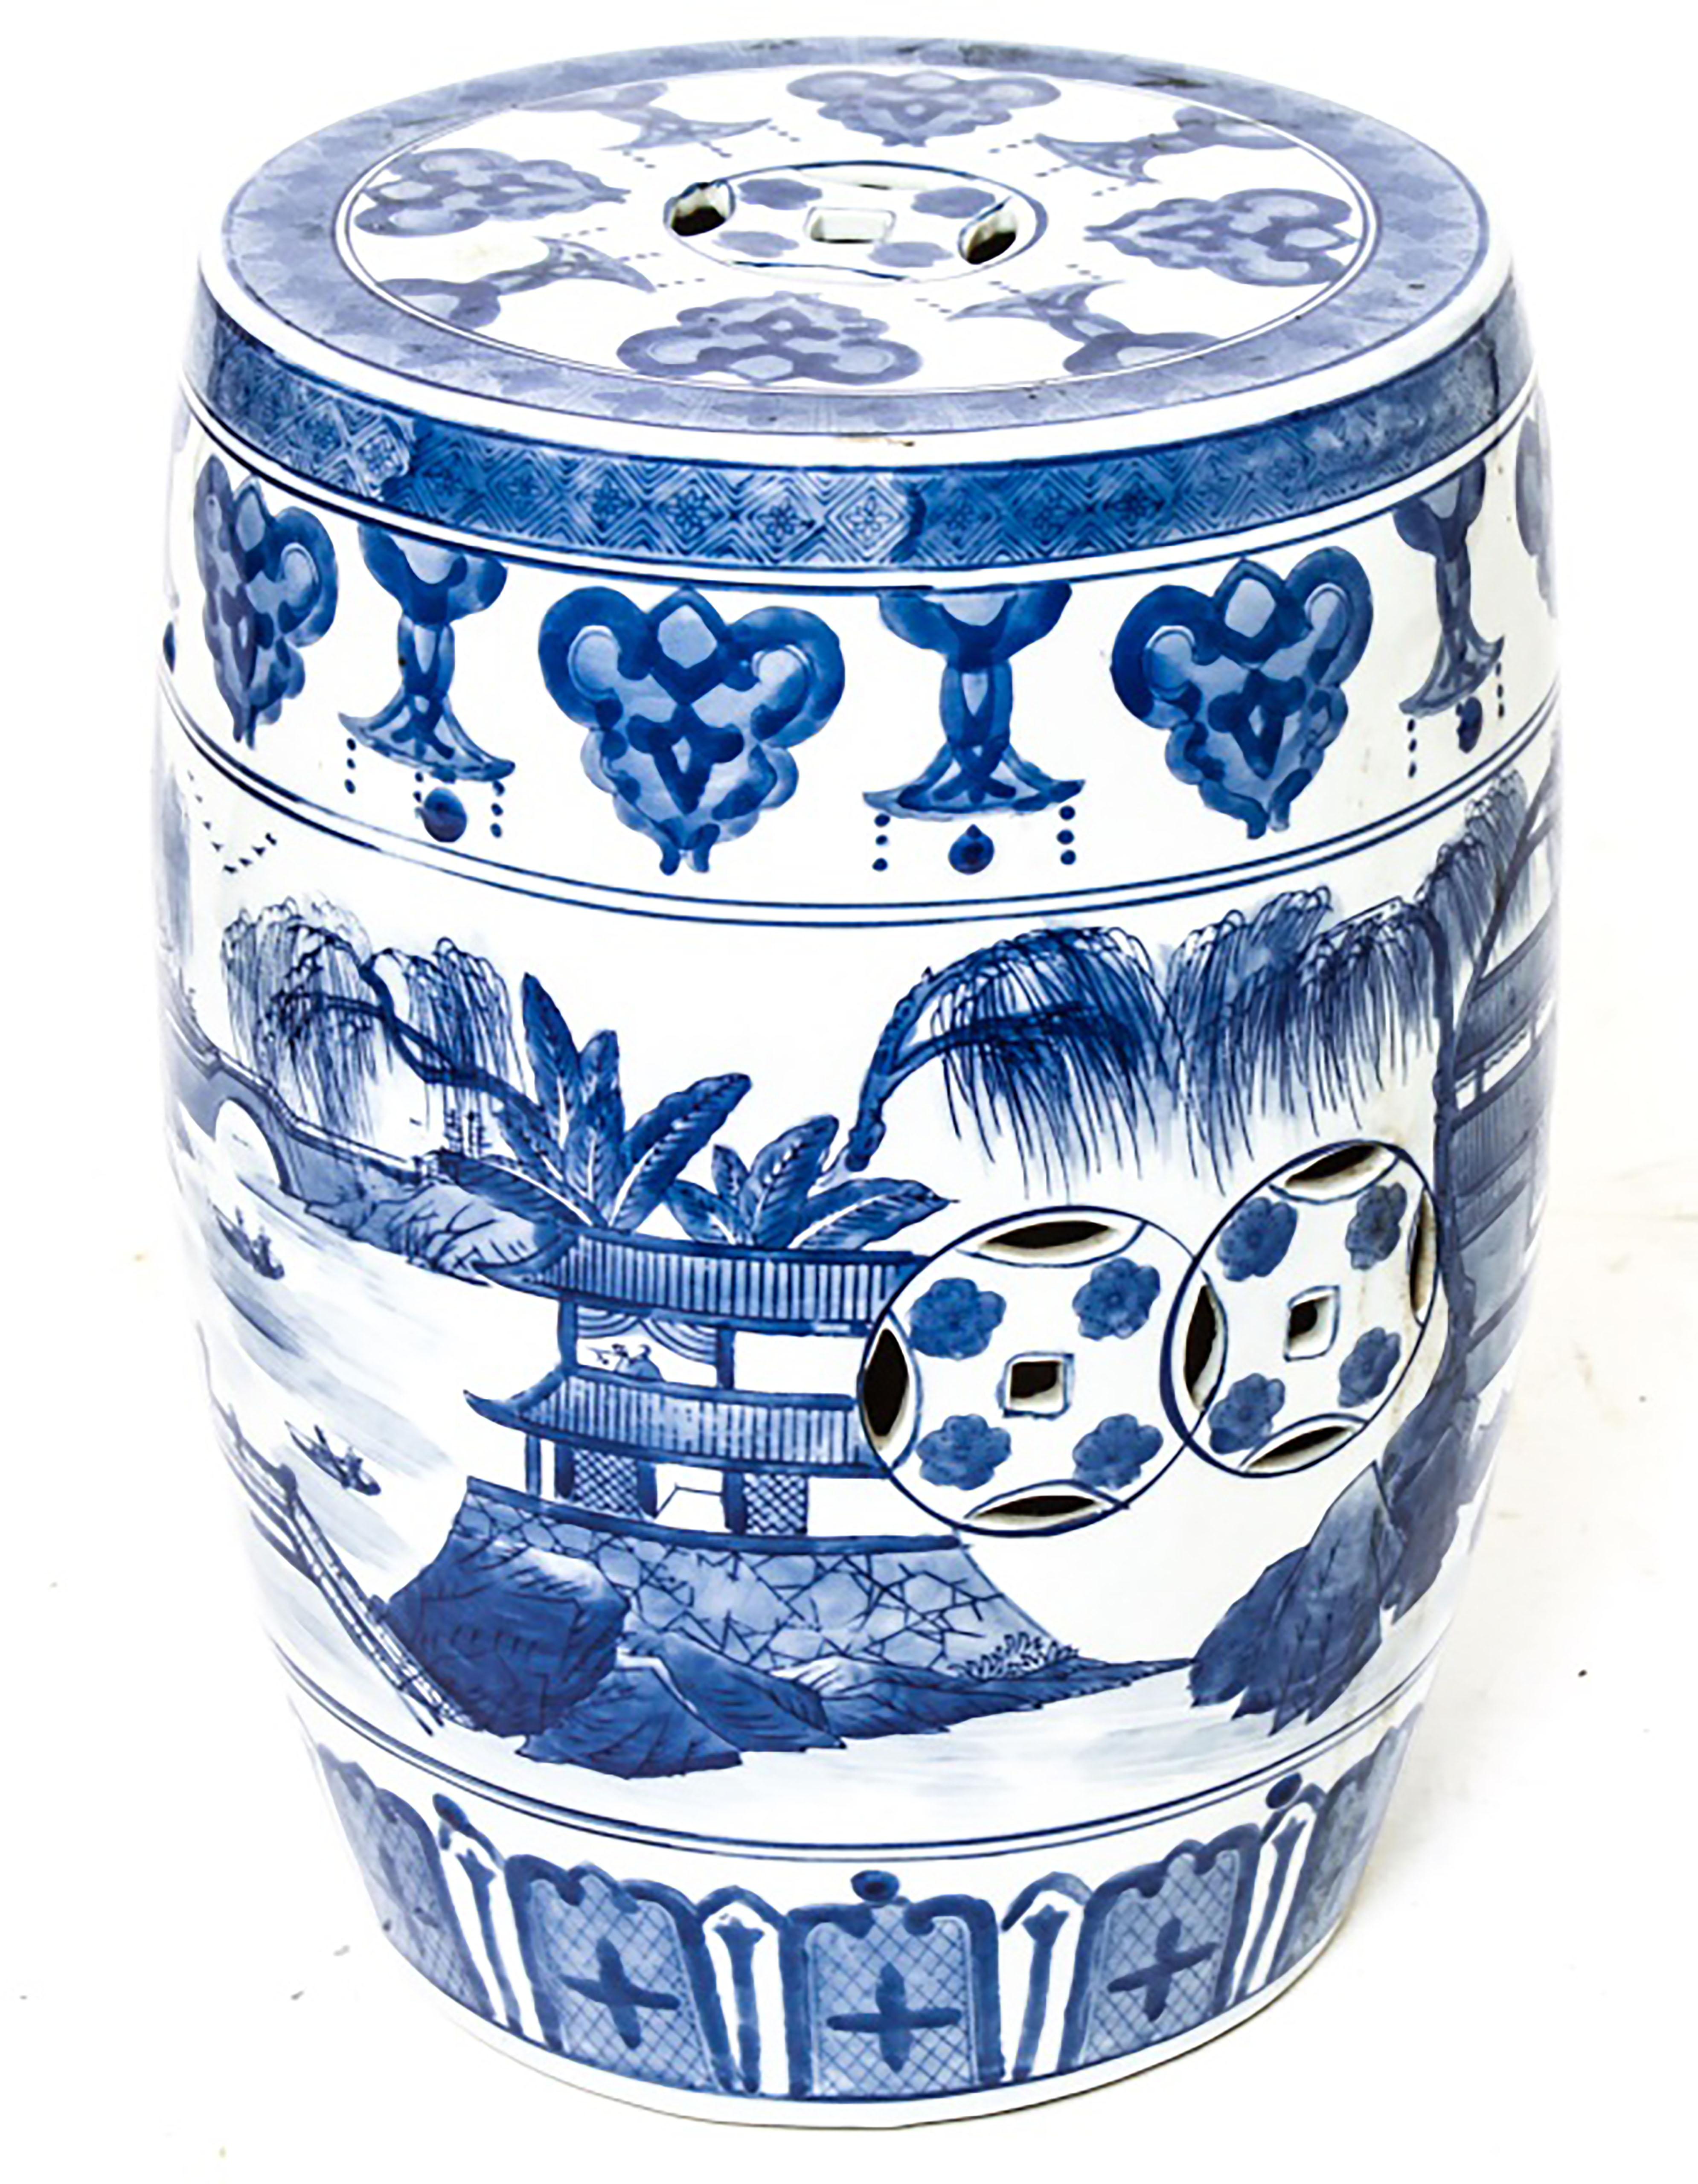 Asiatischer Gartensitz aus blauem und weißem Porzellan mit Tempel- und Wasserszenen. Maße: 17,25